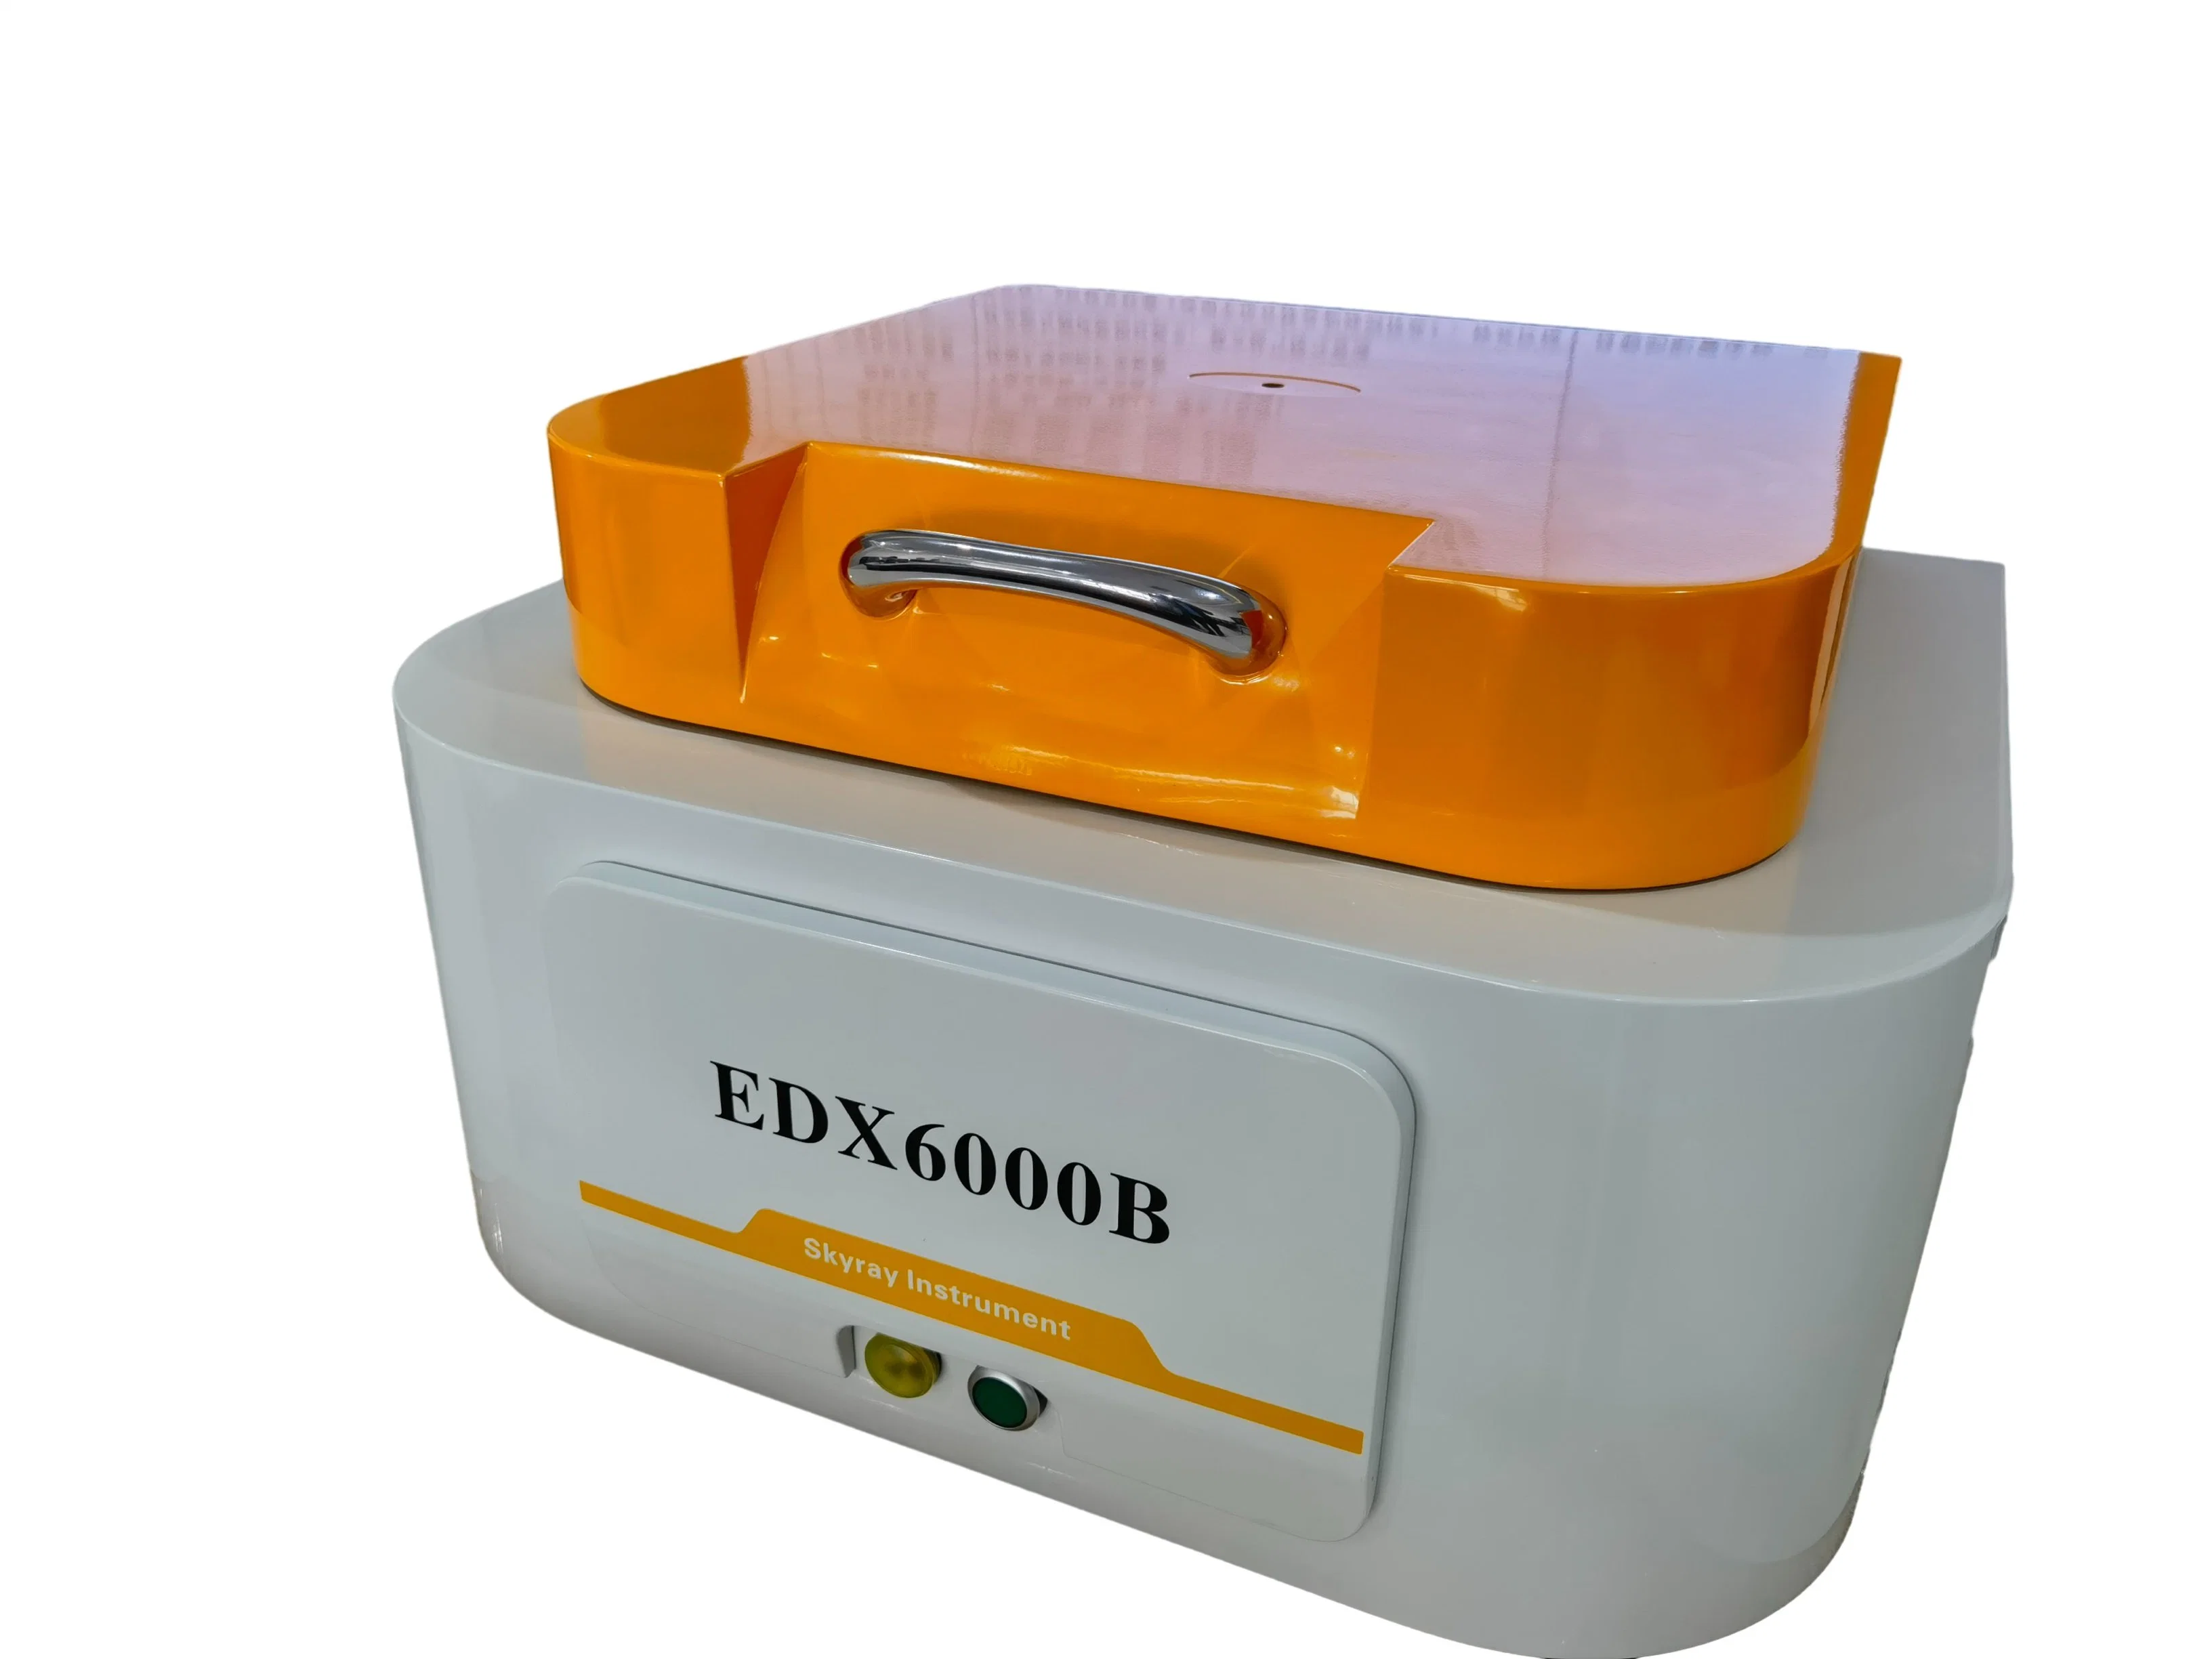 Espectrómetro-Edx6000b Analizador de elementos completos de Skyray Instrument